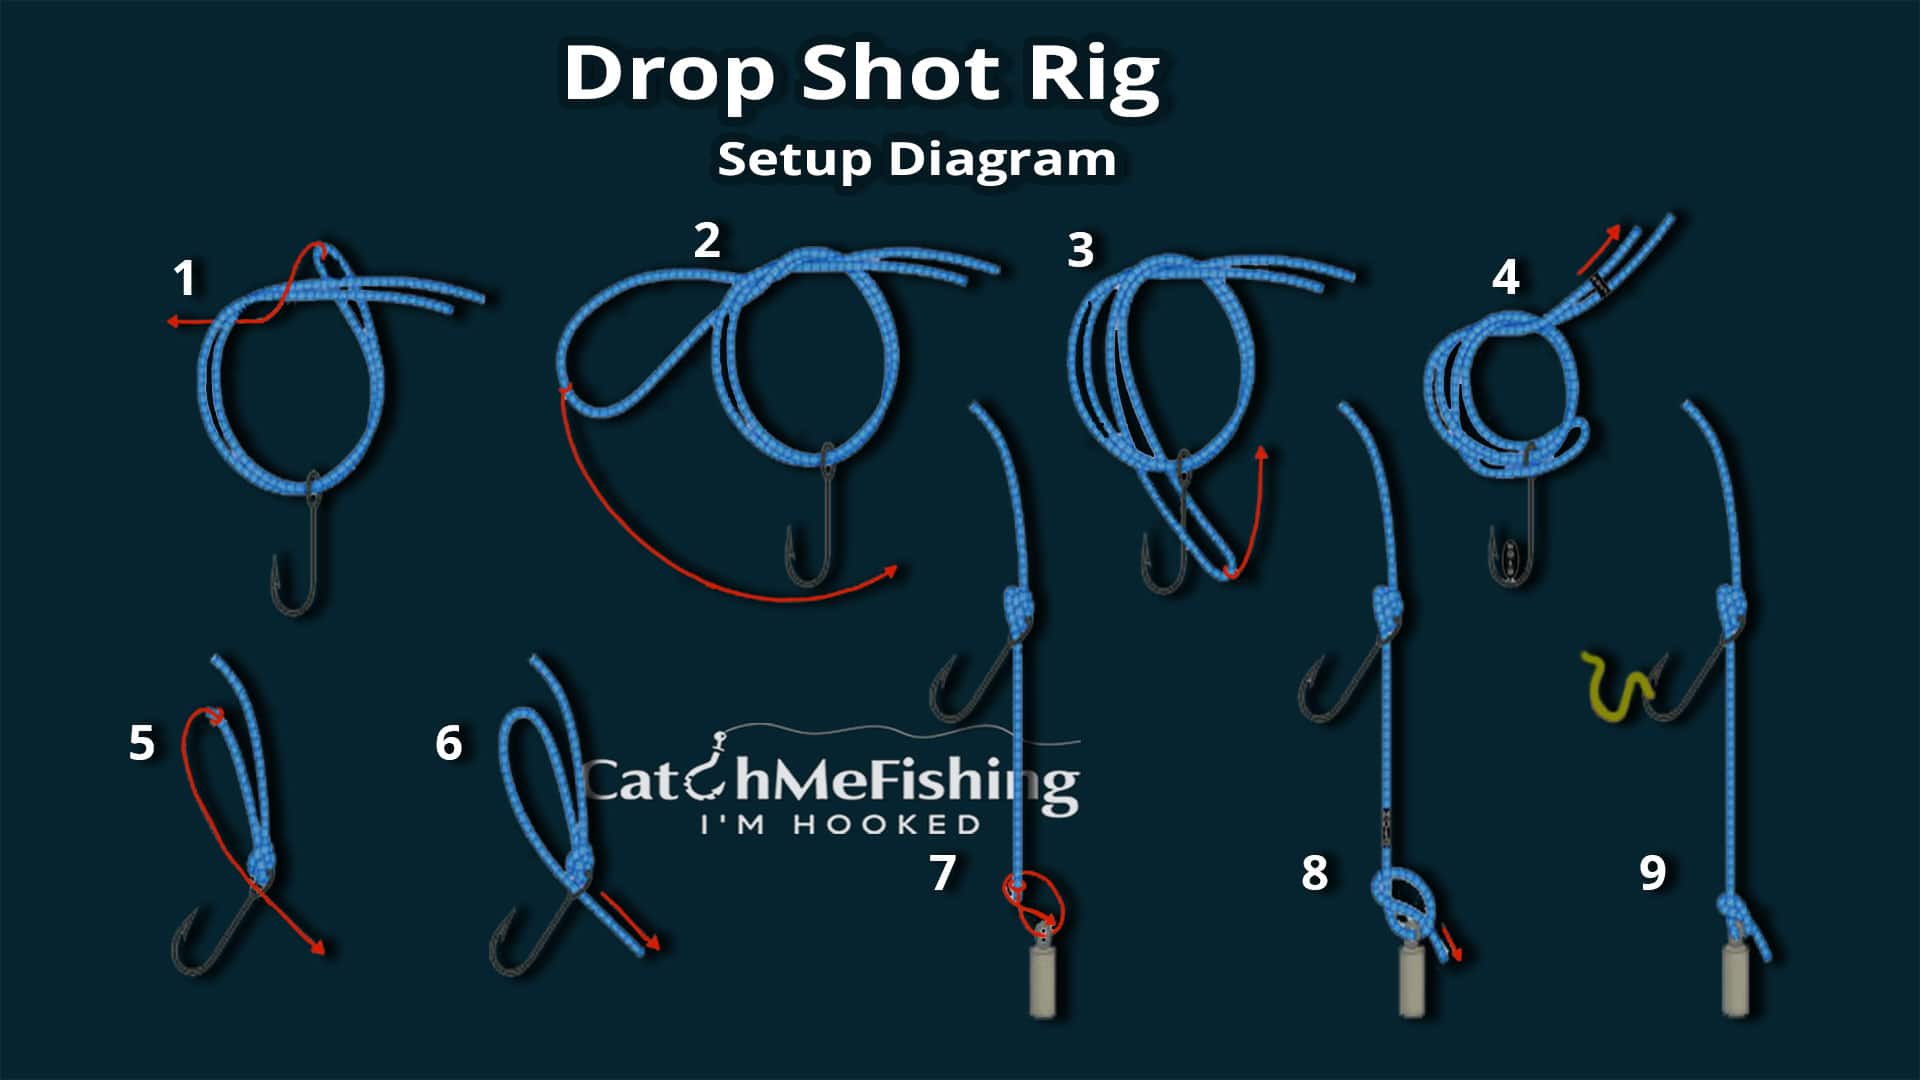 Drop shot rig diagram setup